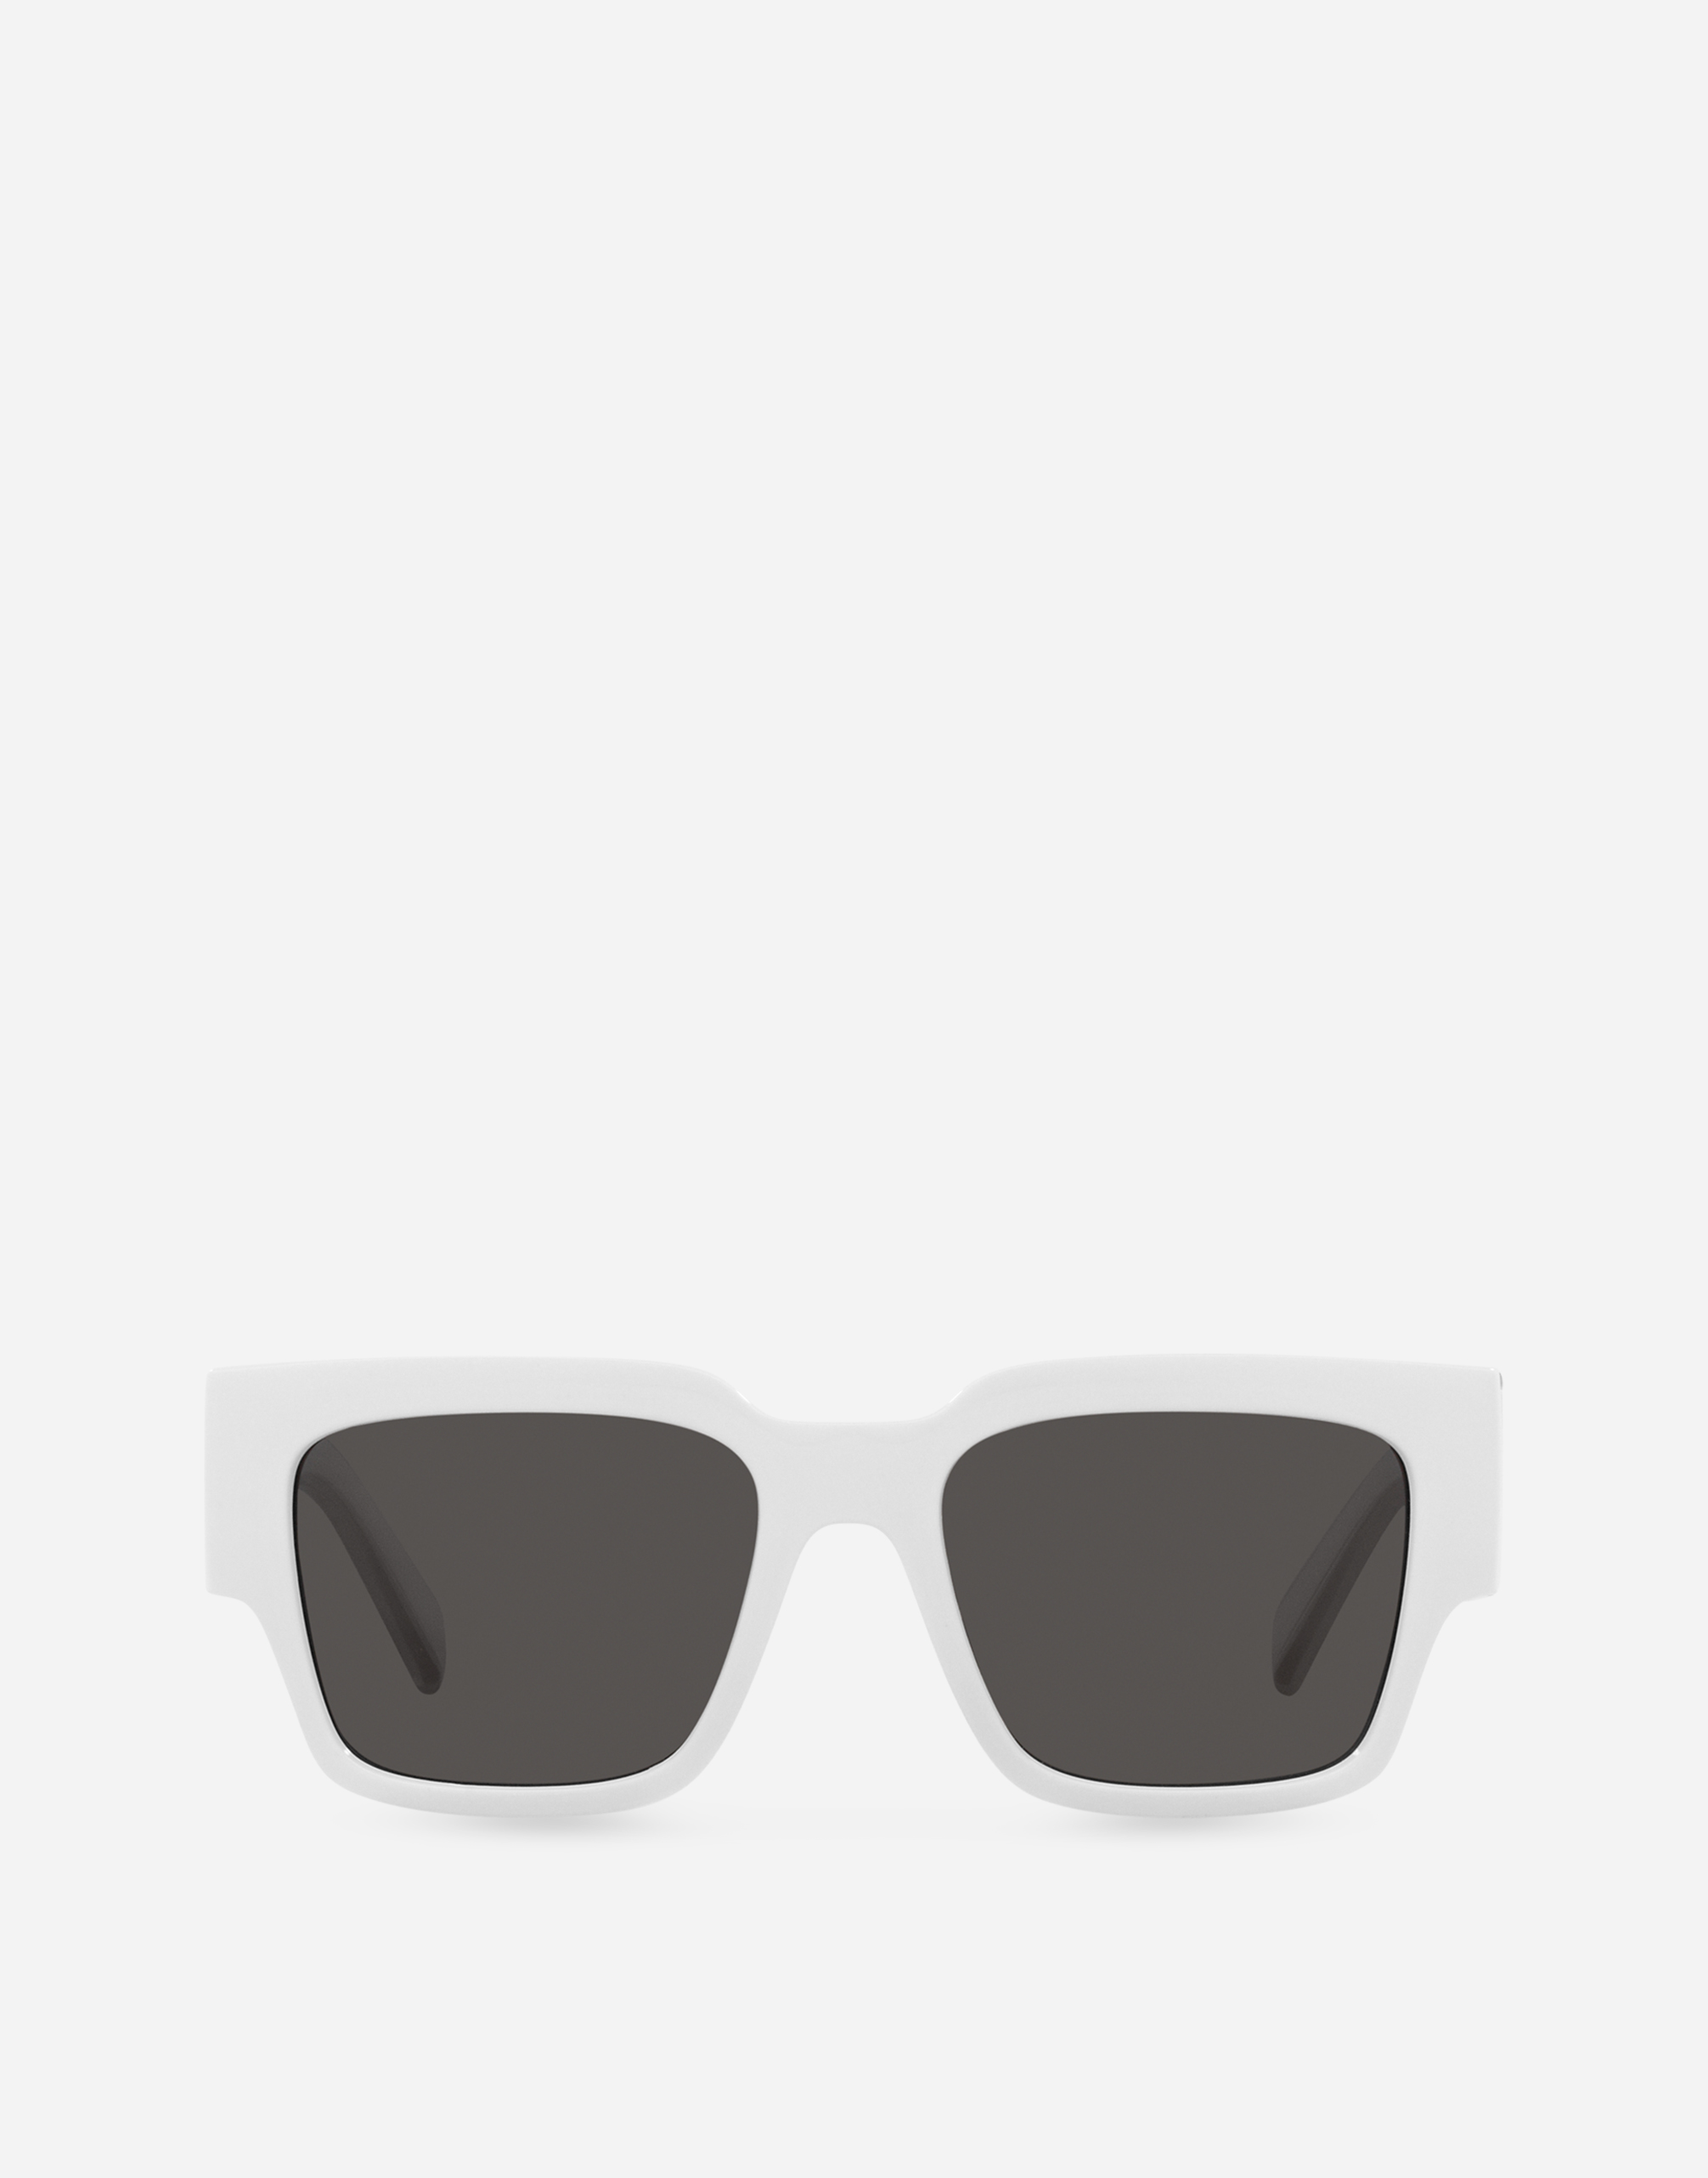 DG Elastic Sunglasses in White